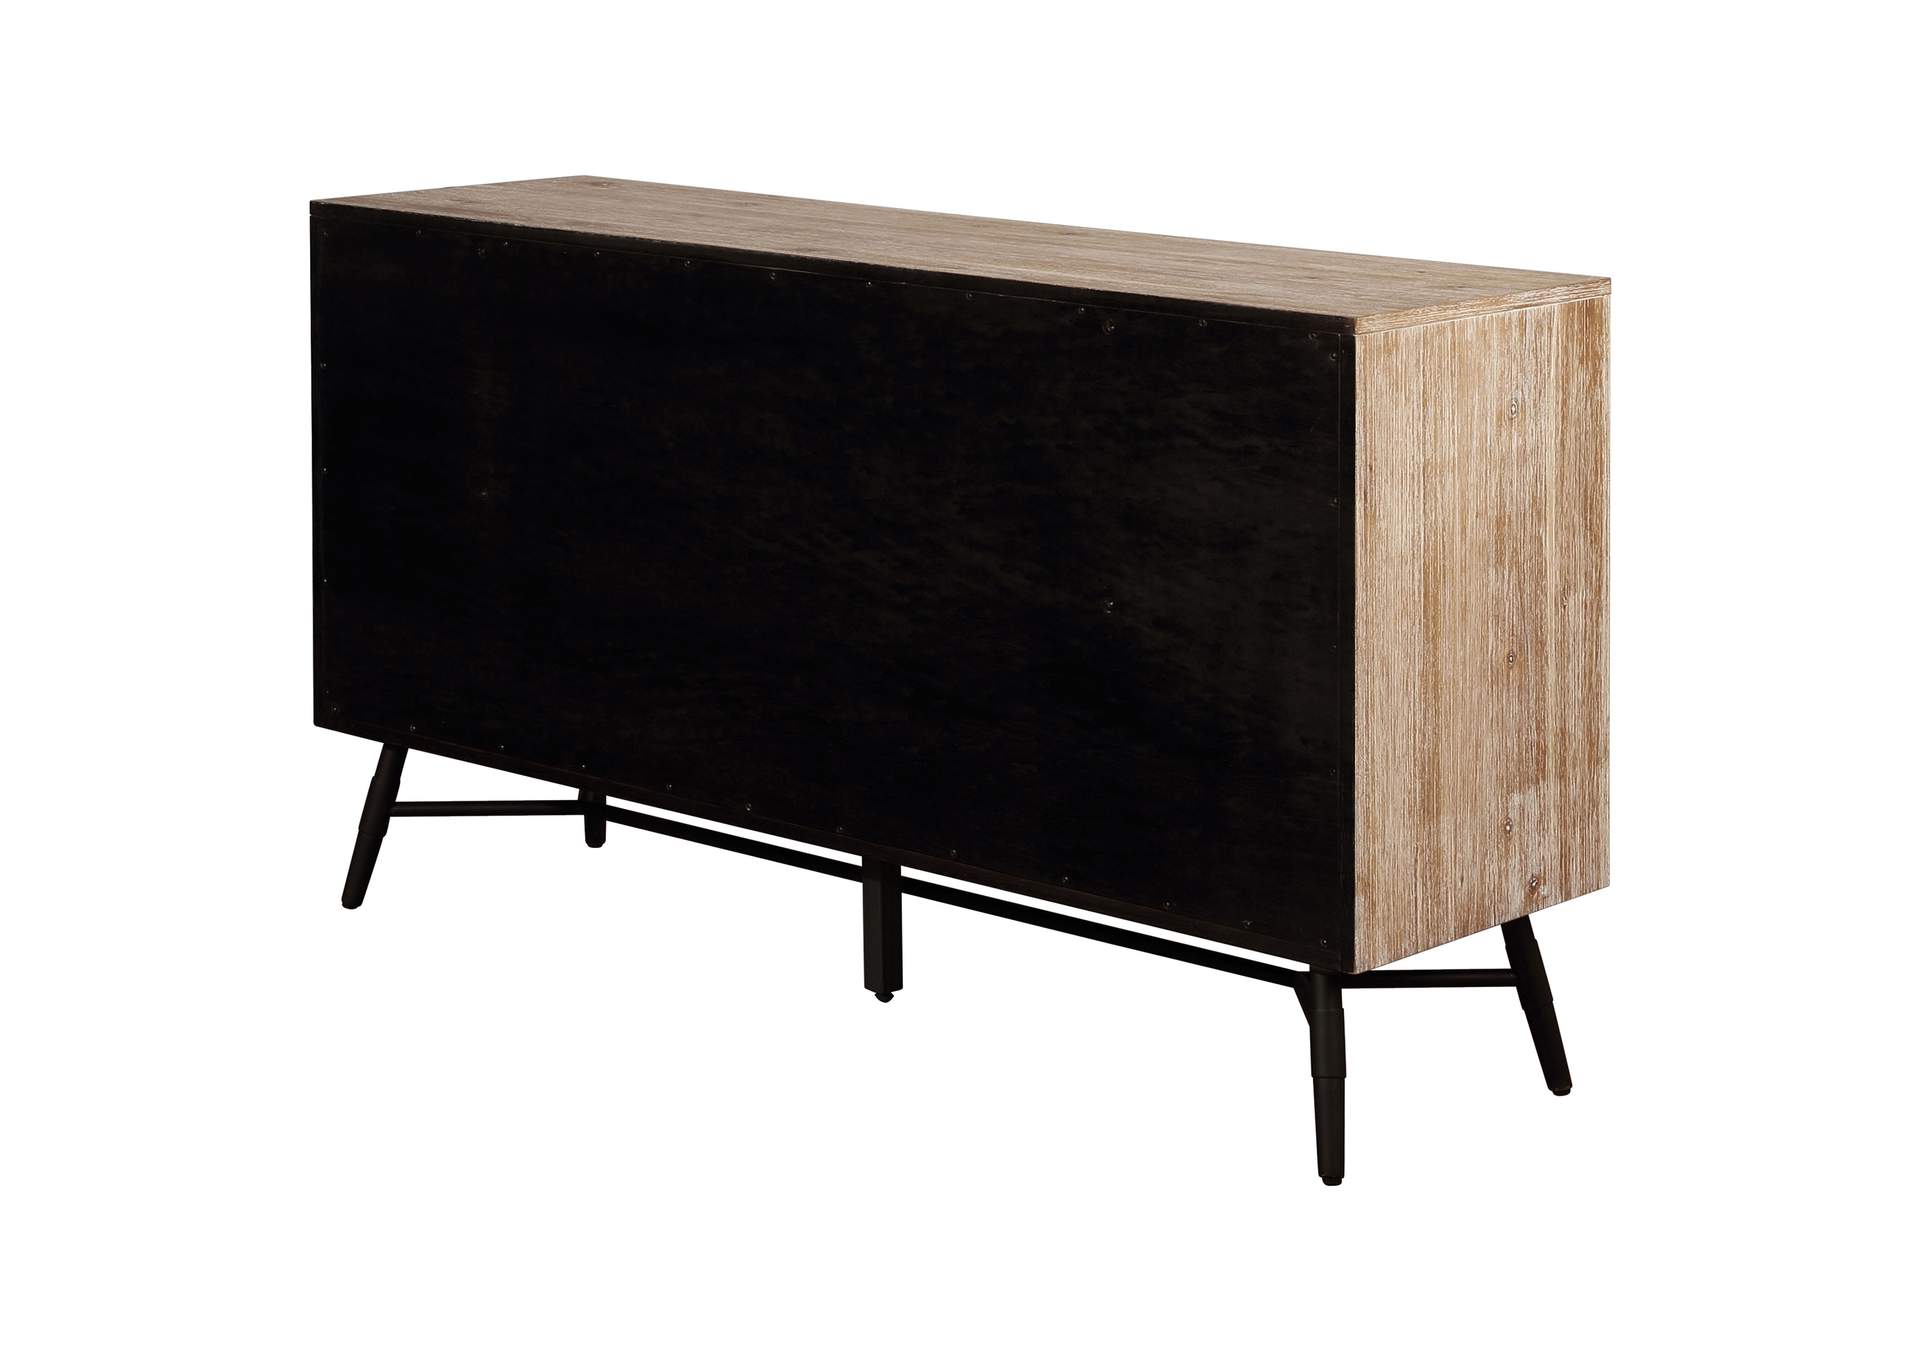 Marlow 6-drawer Dresser Rough Sawn Multi,Coaster Furniture